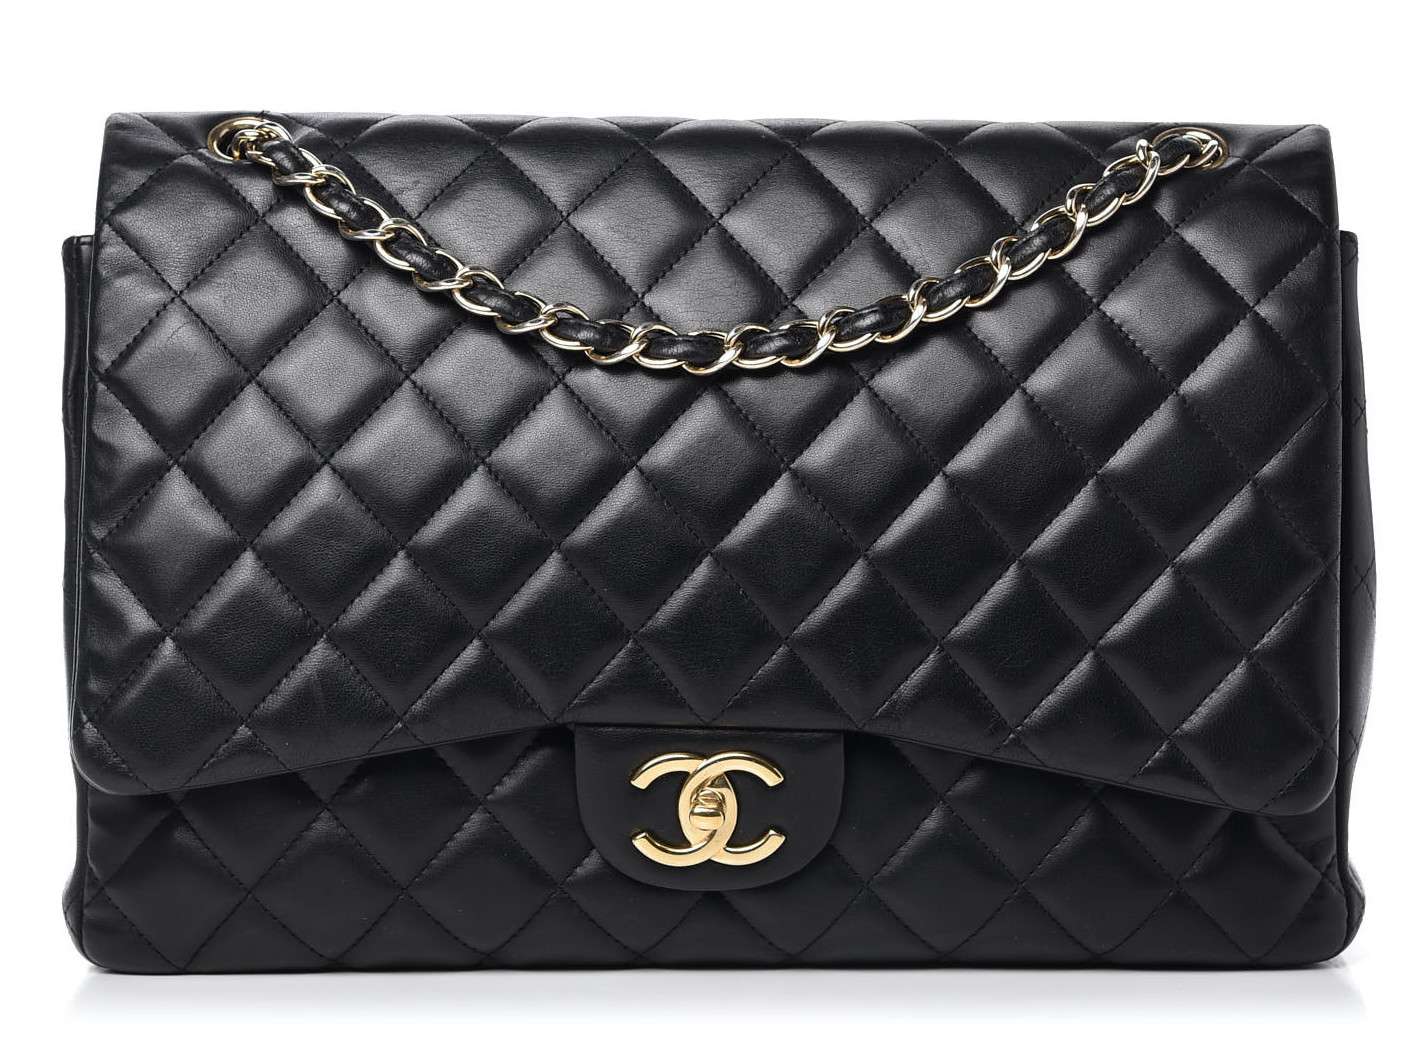 Chanel Maxi Classic Flap Bag